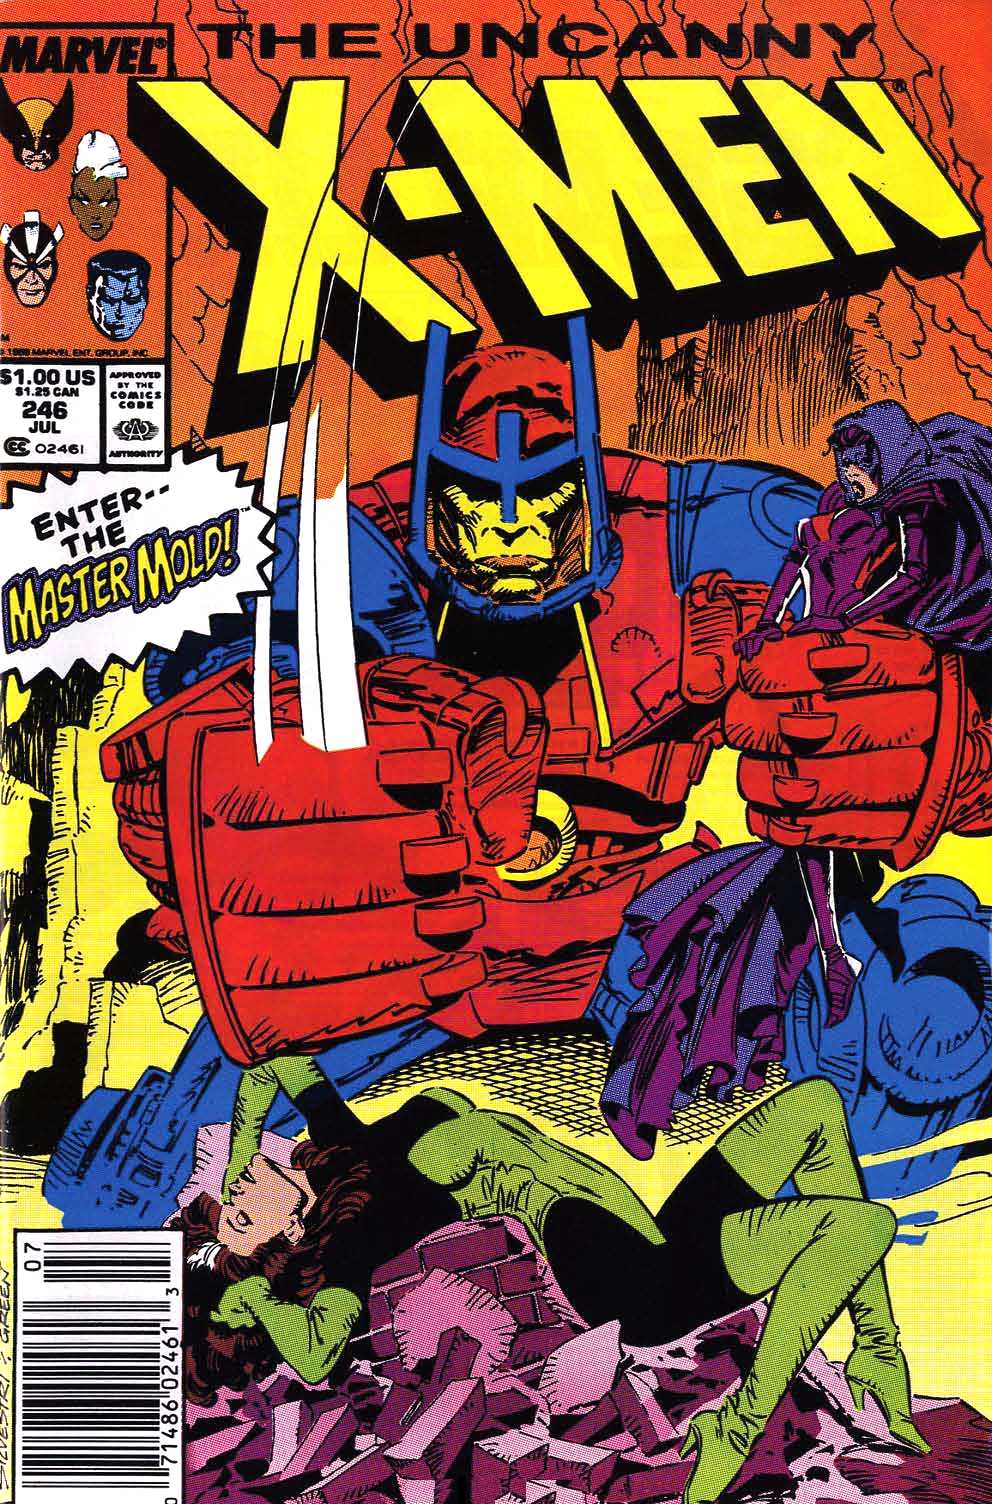 Classic X-Men No.35 1989 Reprints The Uncanny X-Men No.129 John Bolton Back-up 